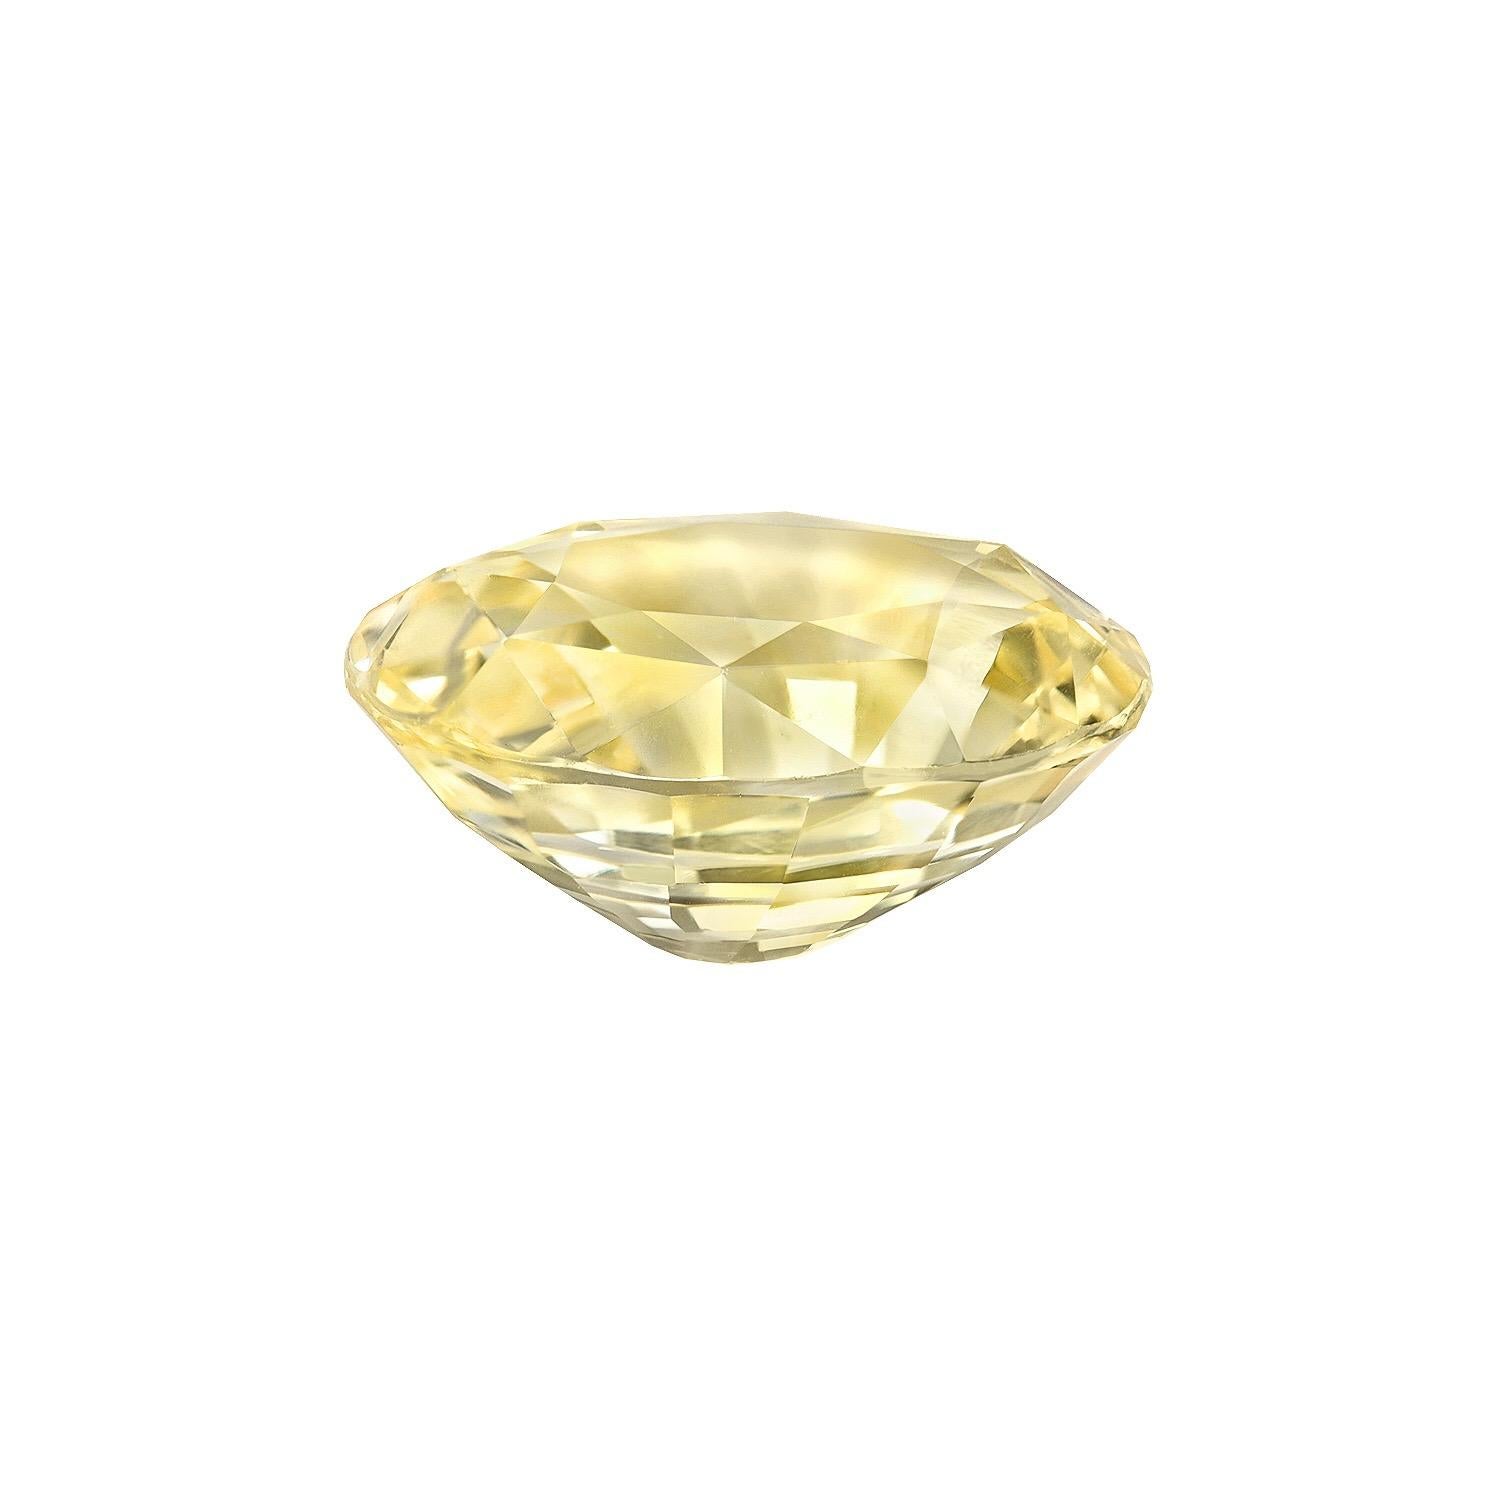 Saphir jaune de Ceylan ovale naturel et non chauffé de 5,56 carats, proposé en vrac aux plus grands collectionneurs de pierres précieuses du monde.
Le certificat de gemme AGTA (American Gem Trade Association) est joint aux images pour votre